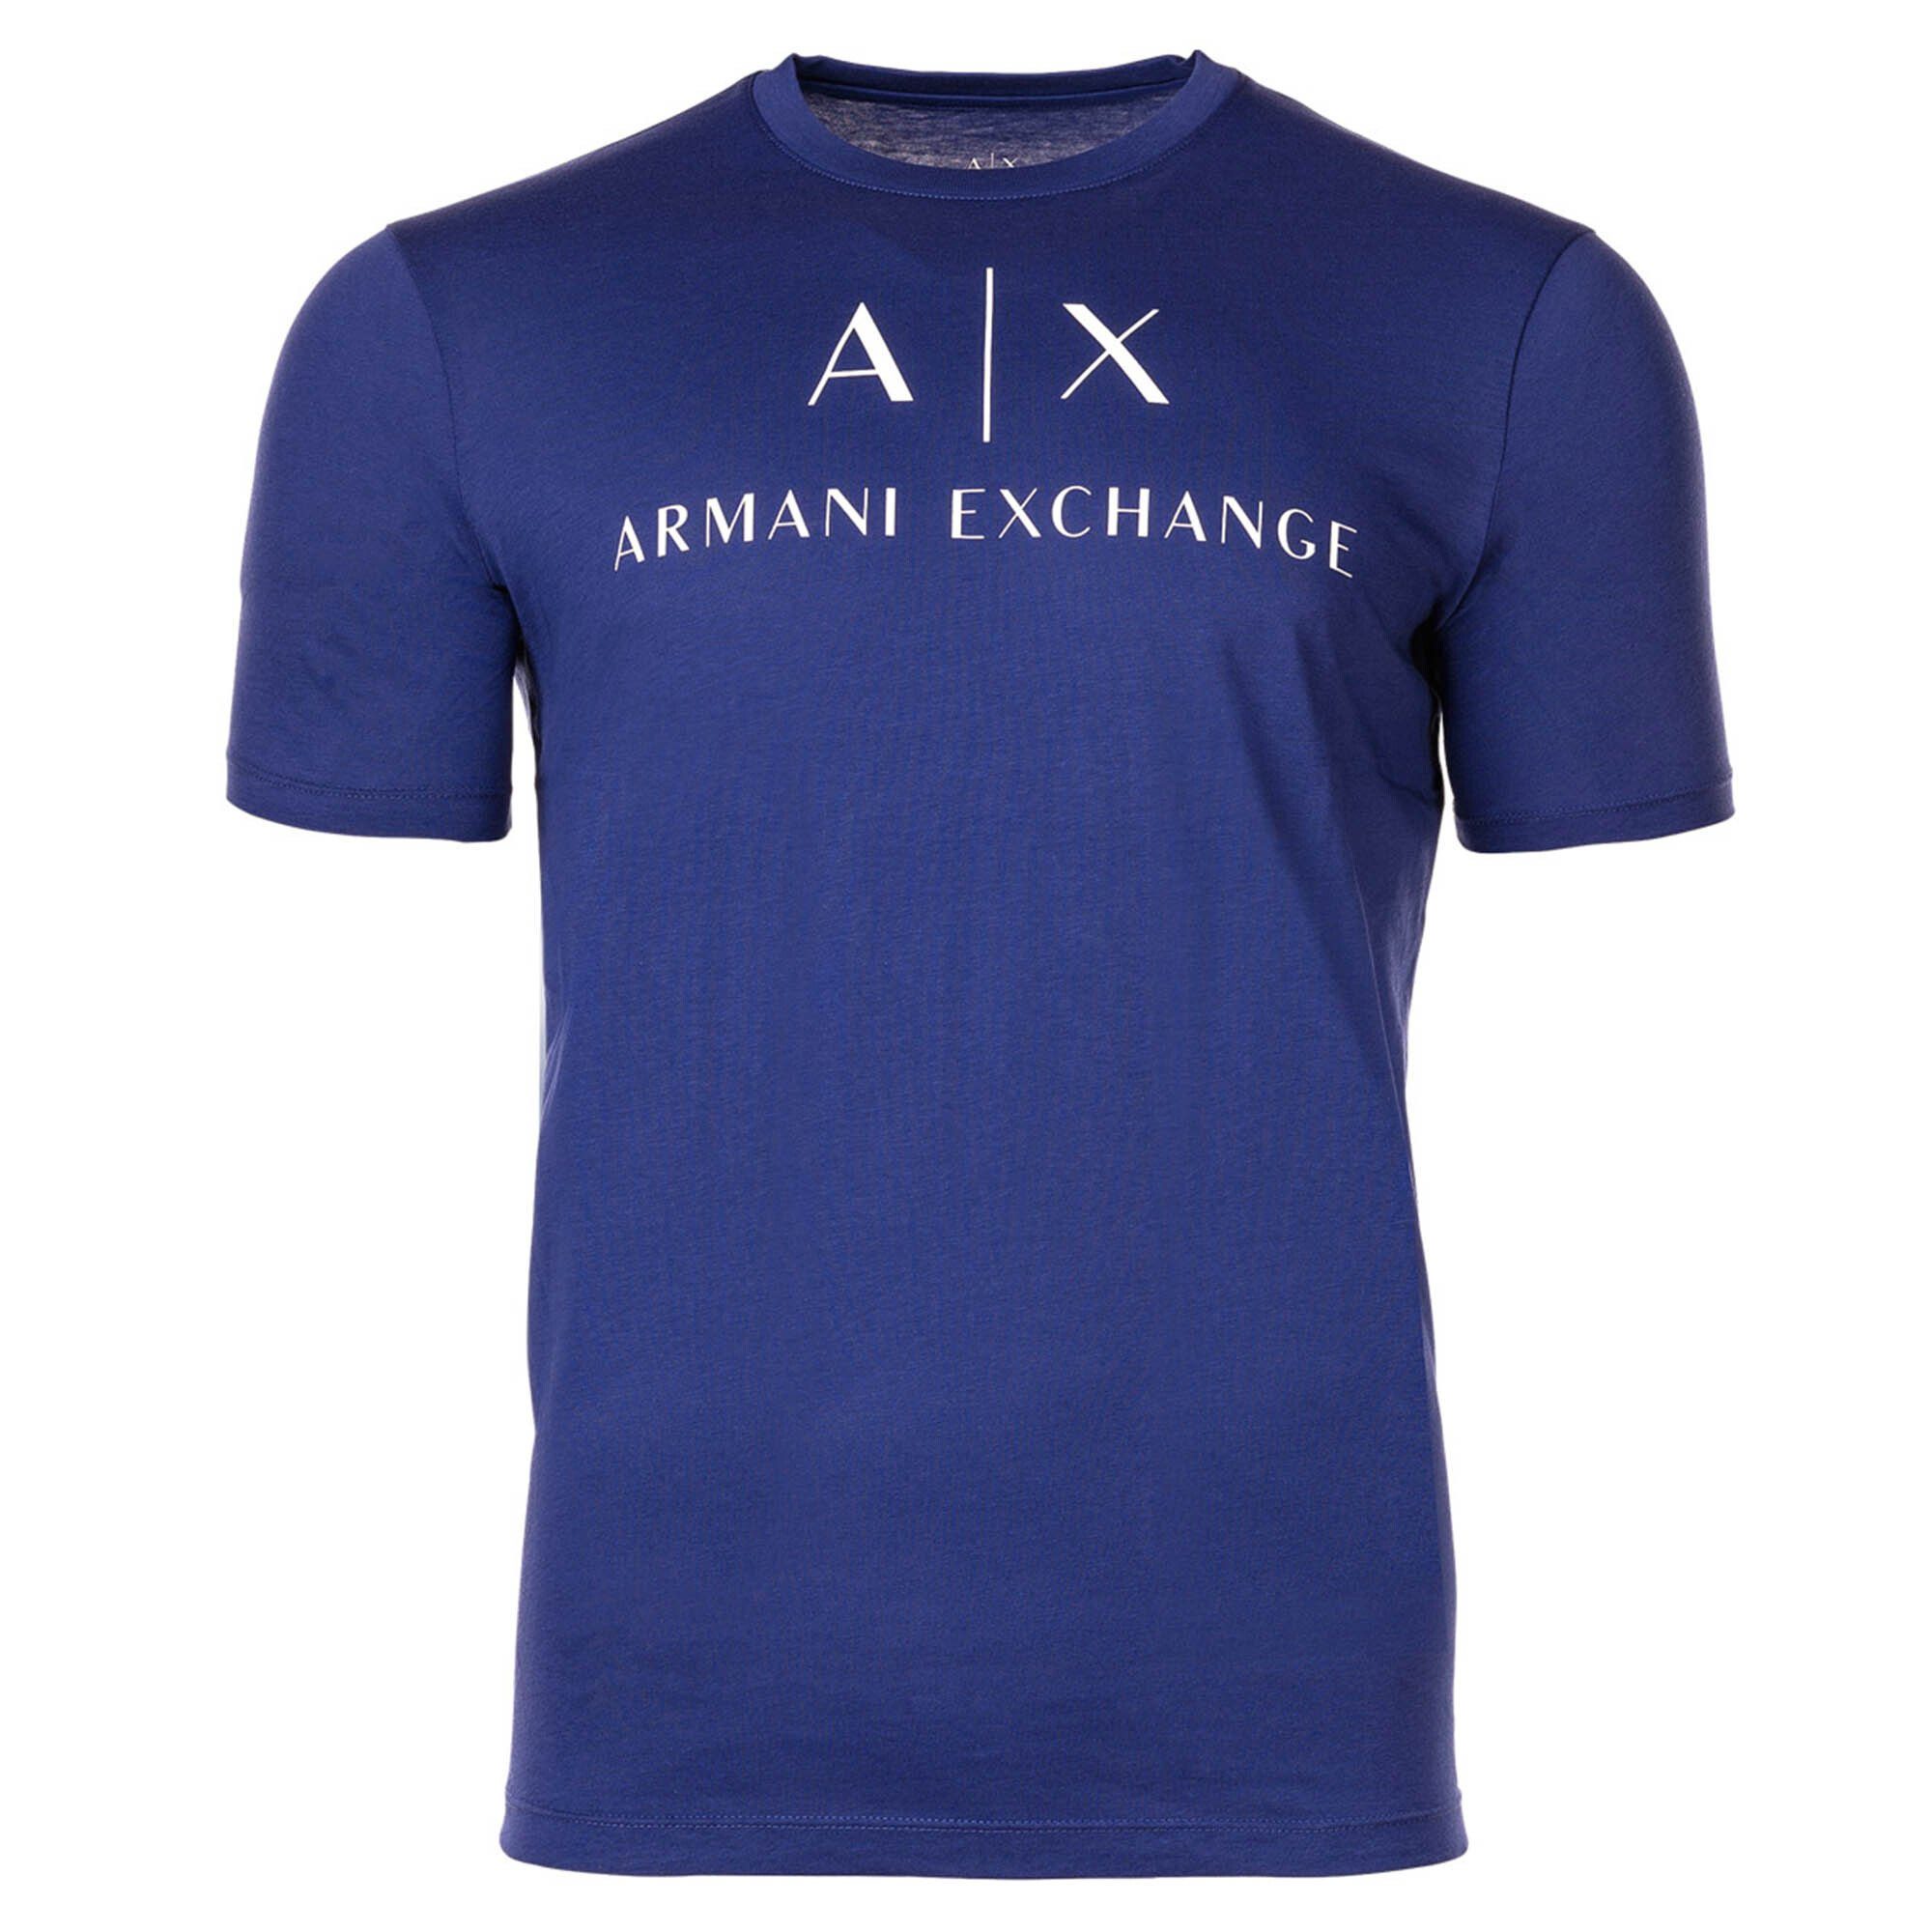 ARMANI EXCHANGE T-Shirt Herren T-Shirt - Schriftzug, Rundhals, Cotton Blau (New Ultramarine)